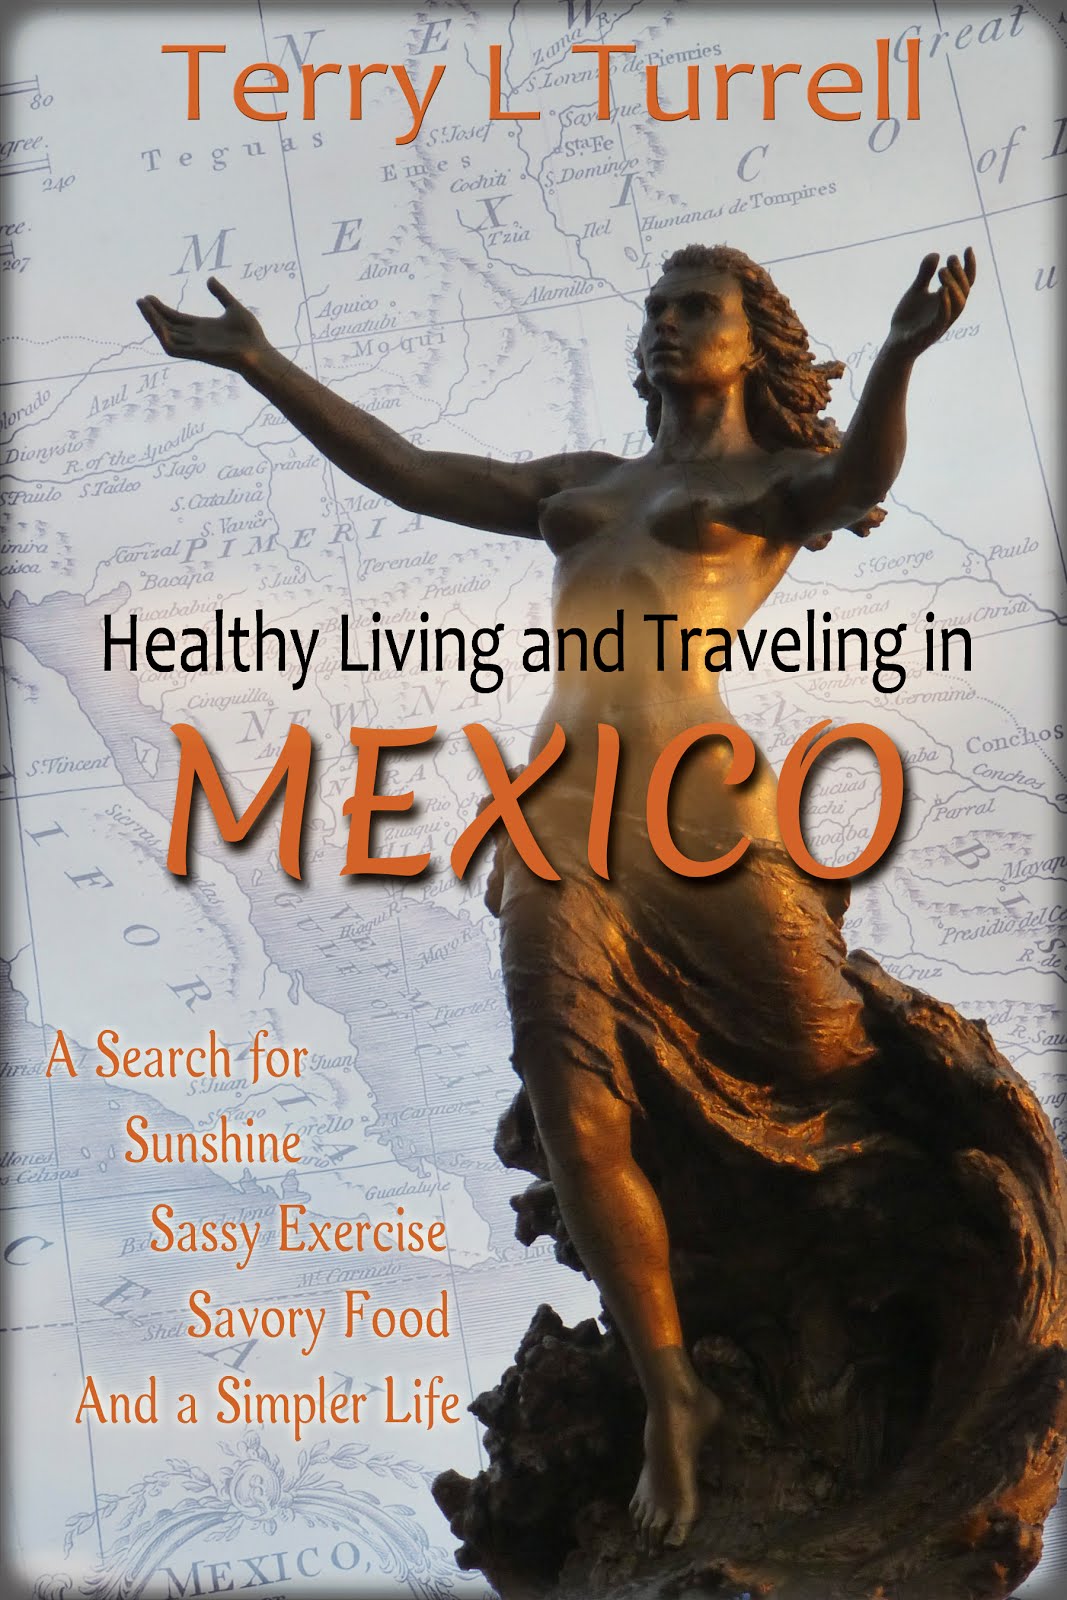 Healthy Living in Mexico #1 eBook Link: